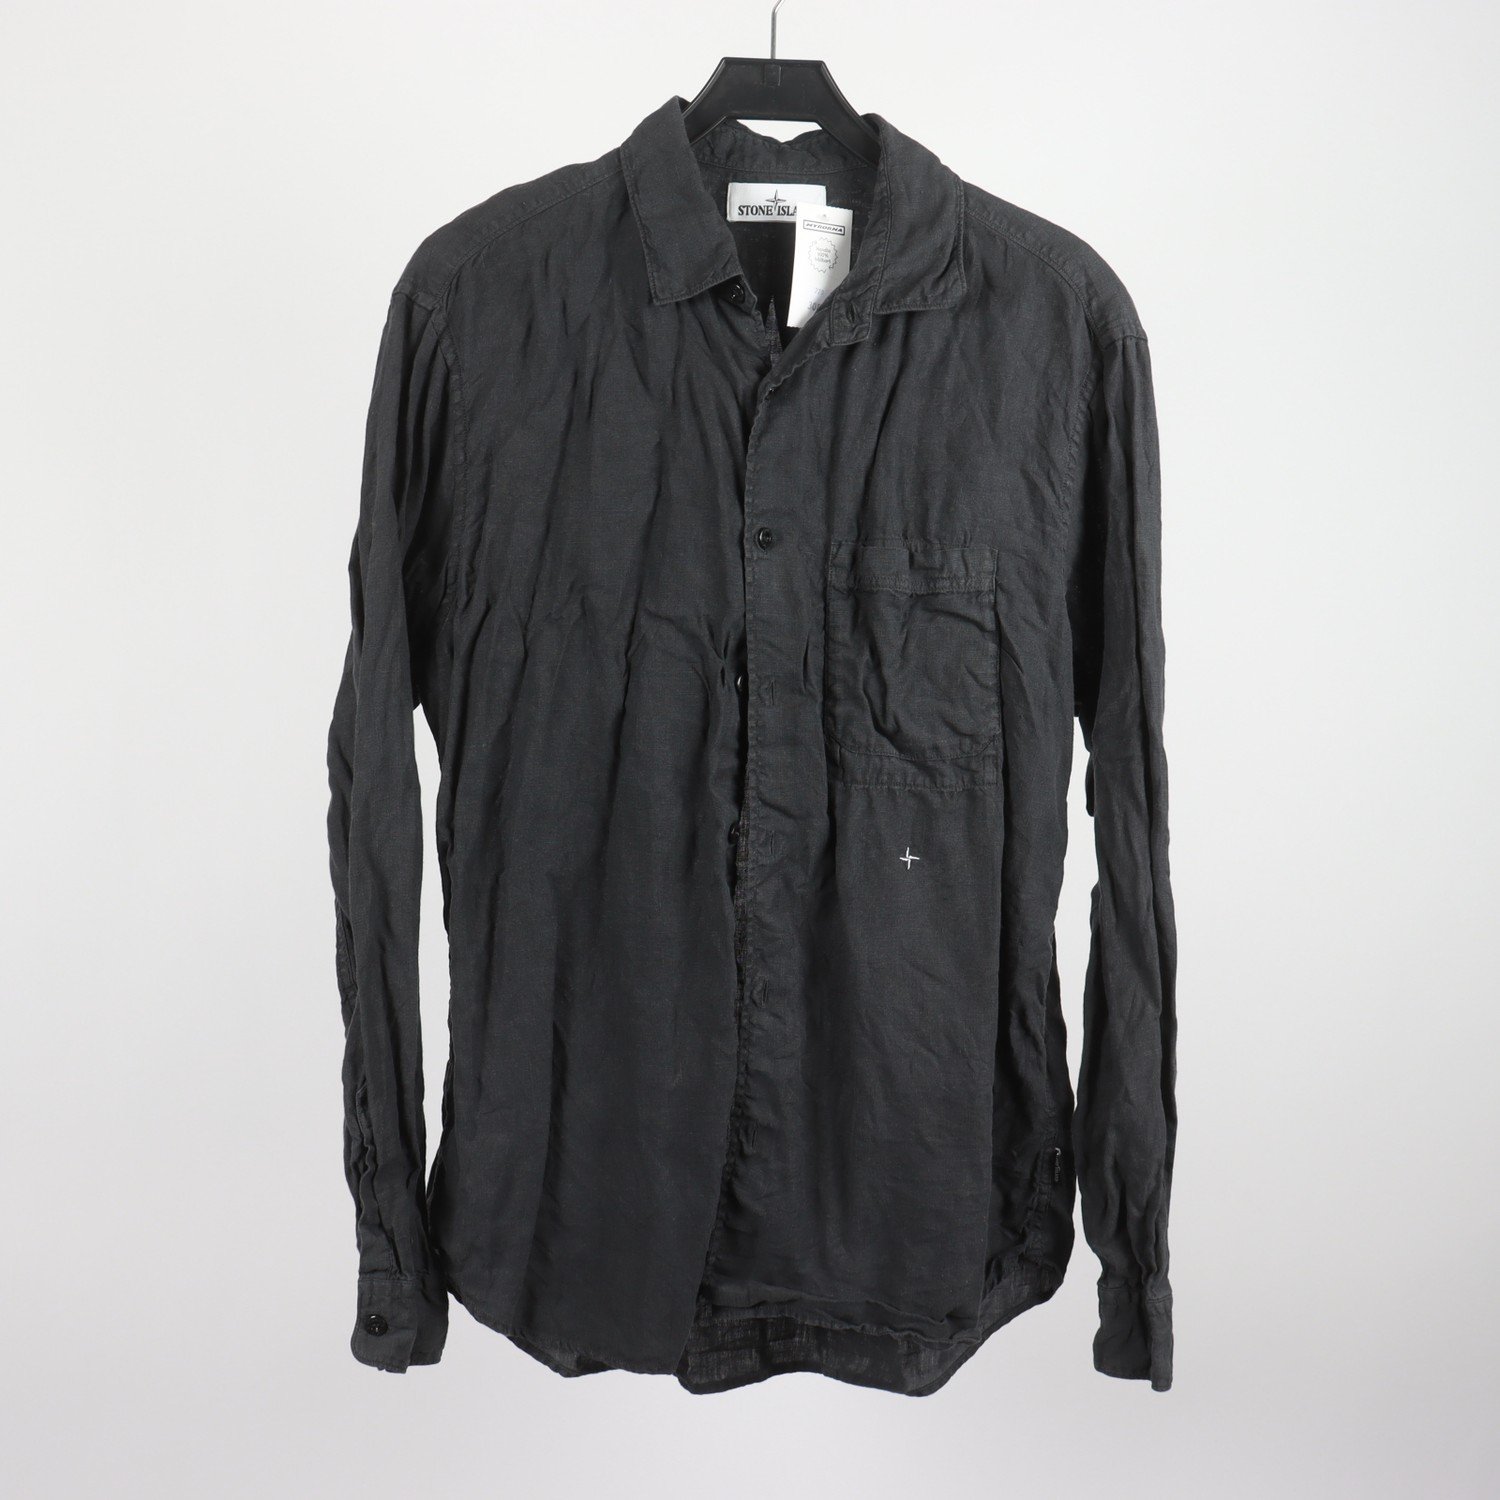 Skjorta, Stone Island, svart, 100% lin, stl. XL